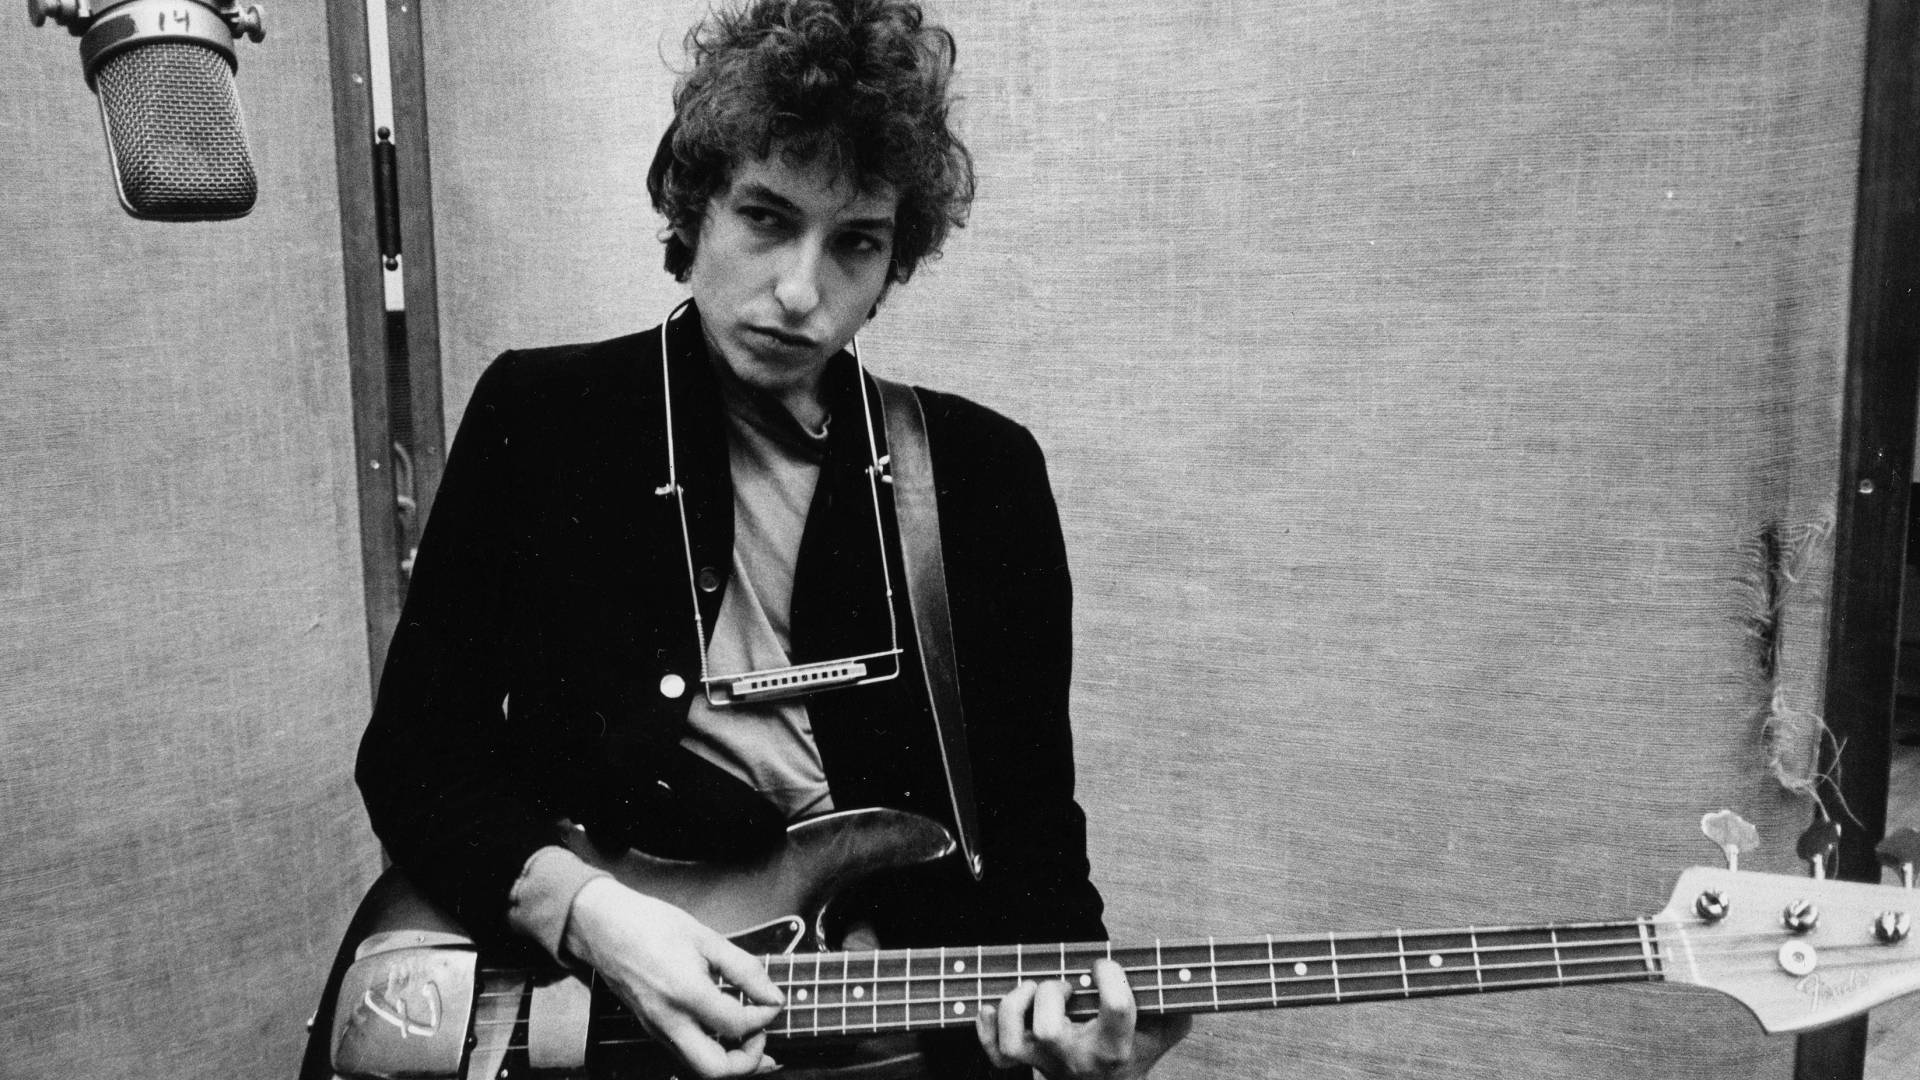 Odbacili slučaj Boba Dylana: Žena koja ga je optužila za zlostavljanje uništila je dokaze?